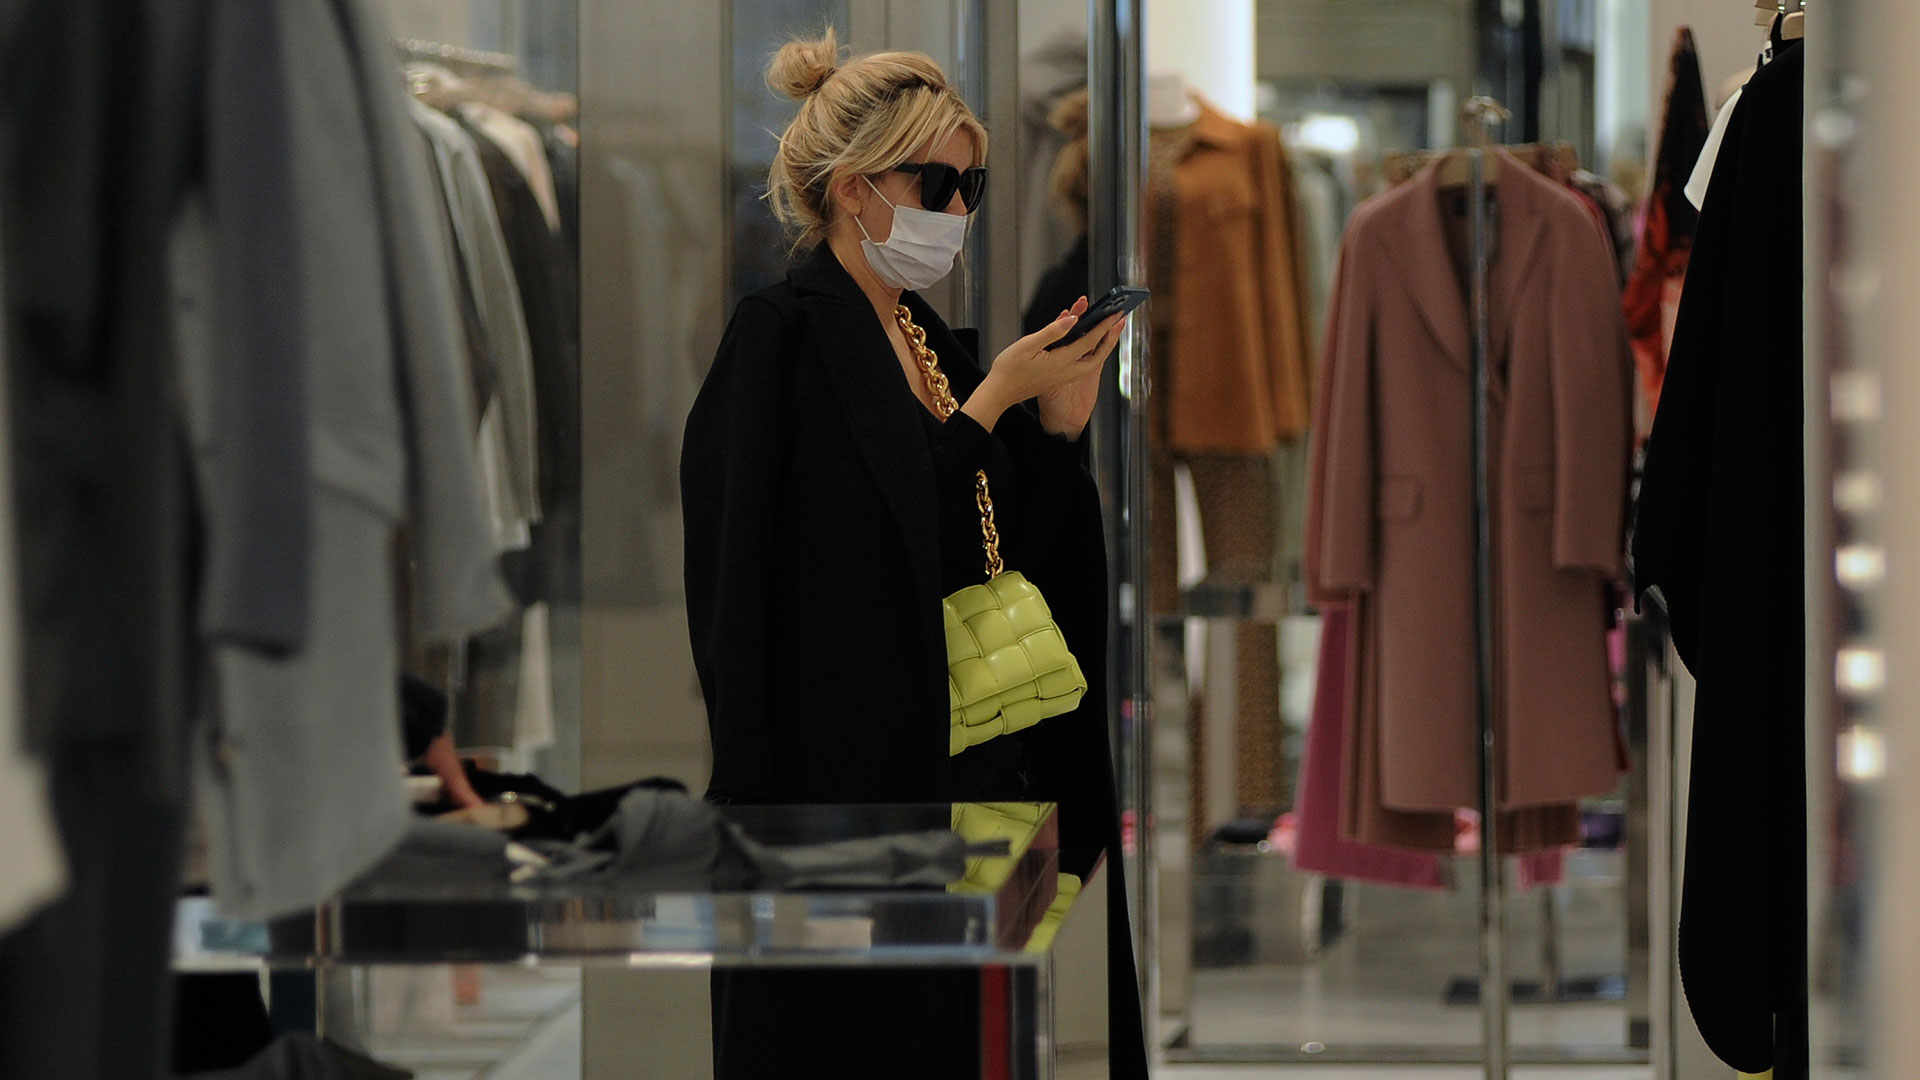 Wanda alternó entre las boutiques y su teléfono celular durante su paseo de compras en Milán 